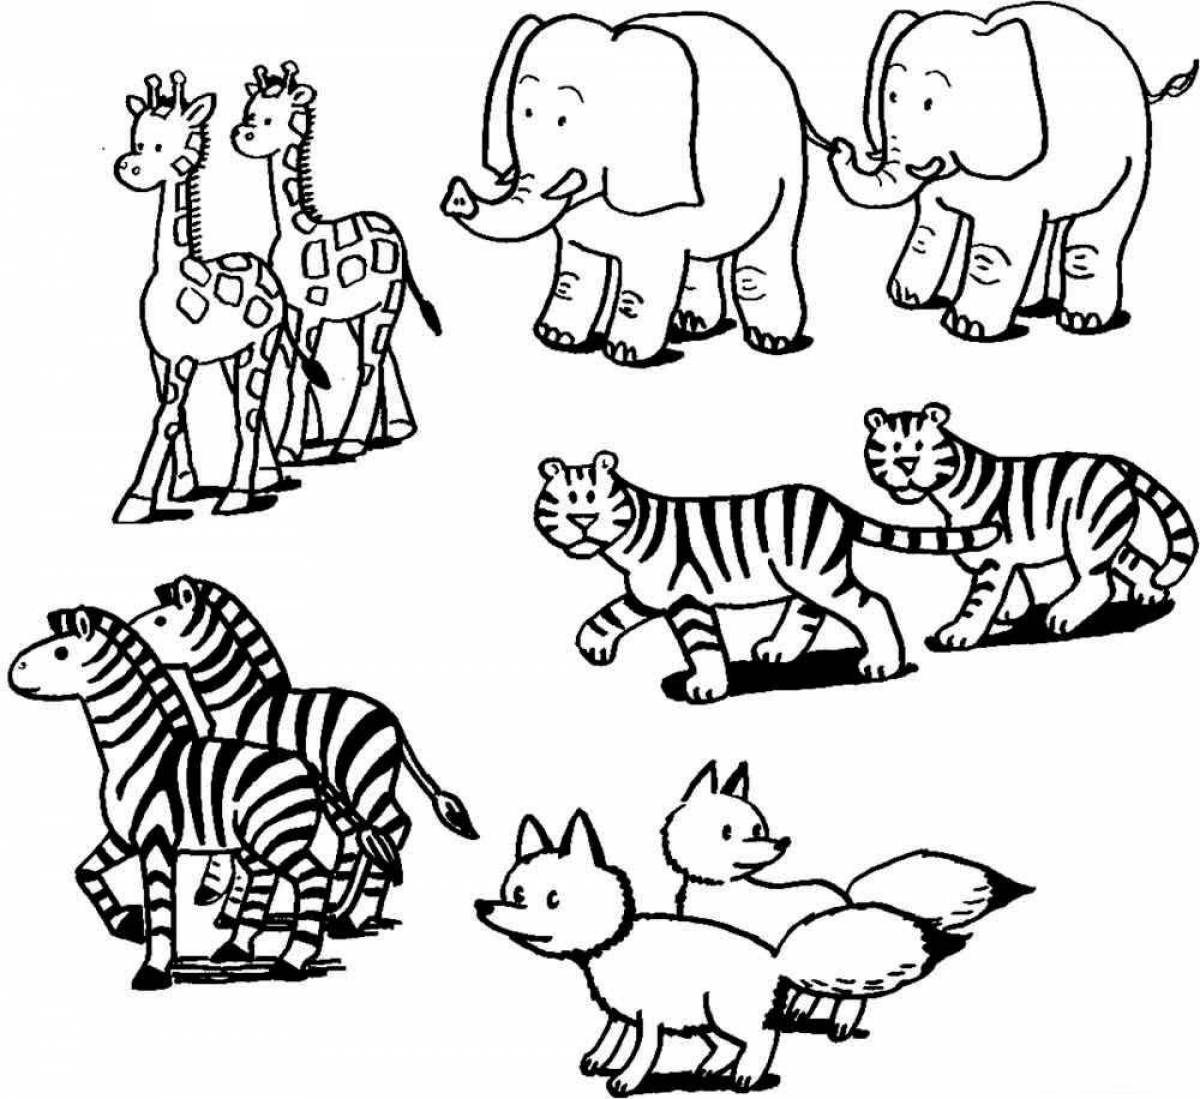 Смелая раскраска диких животных для детей 2-3 лет